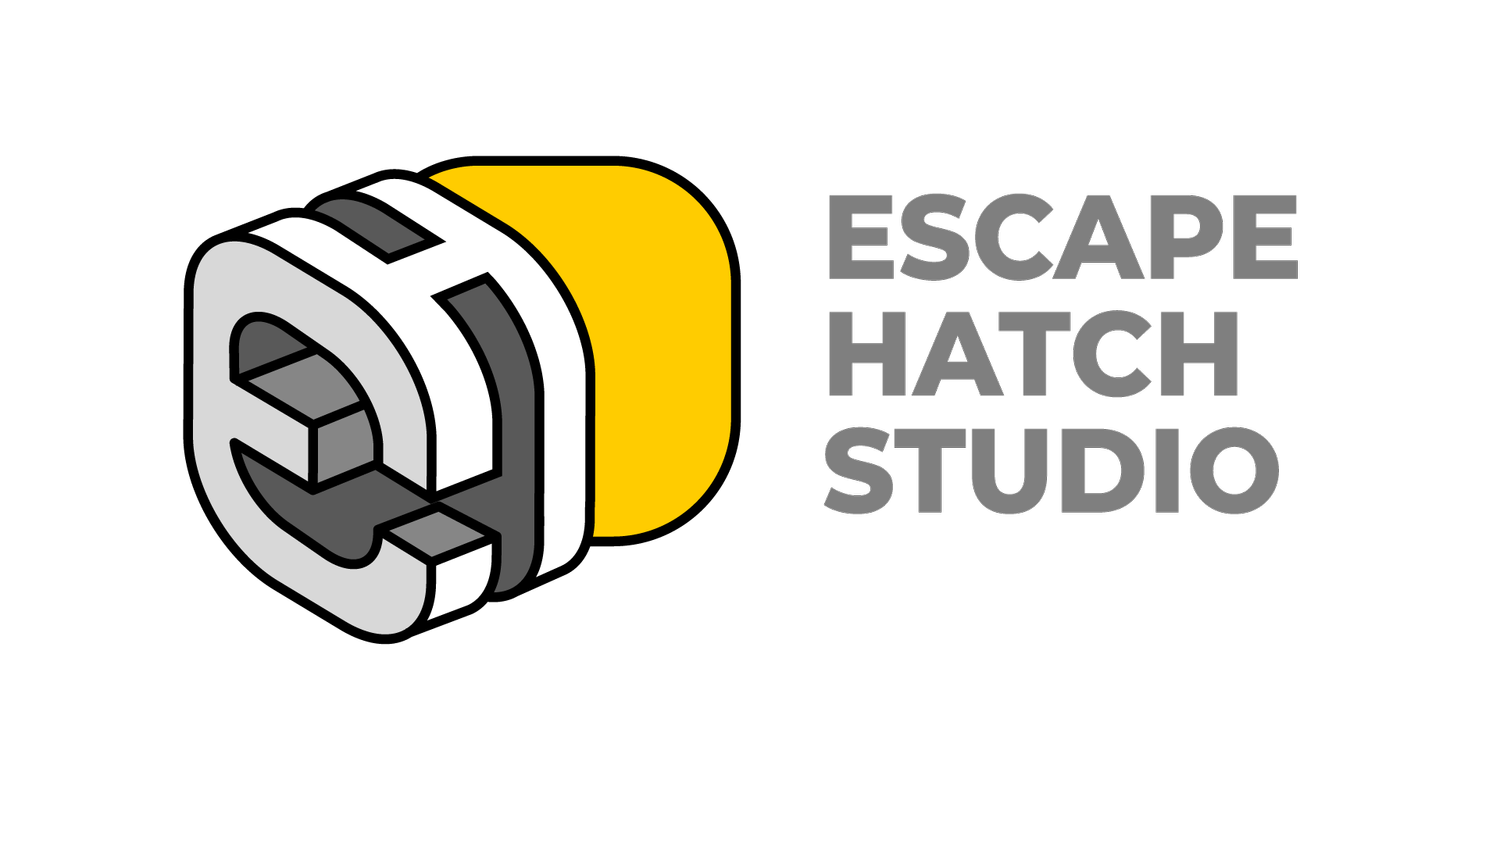 ESCAPE HATCH STUDIO